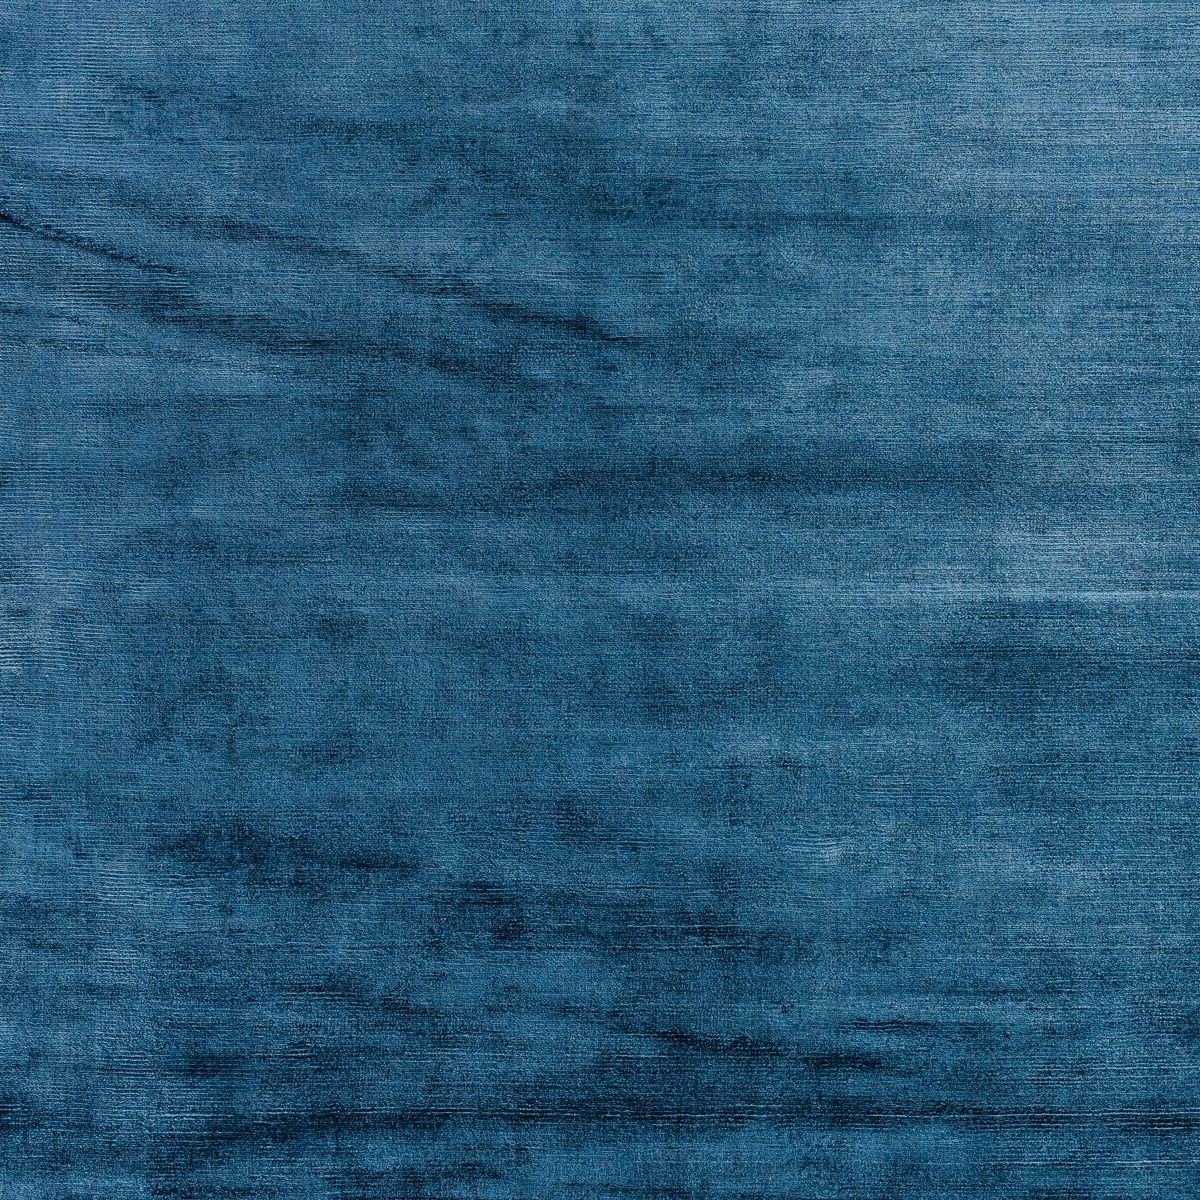 JOOP! Soft Teppich in Blau als Detailansicht.